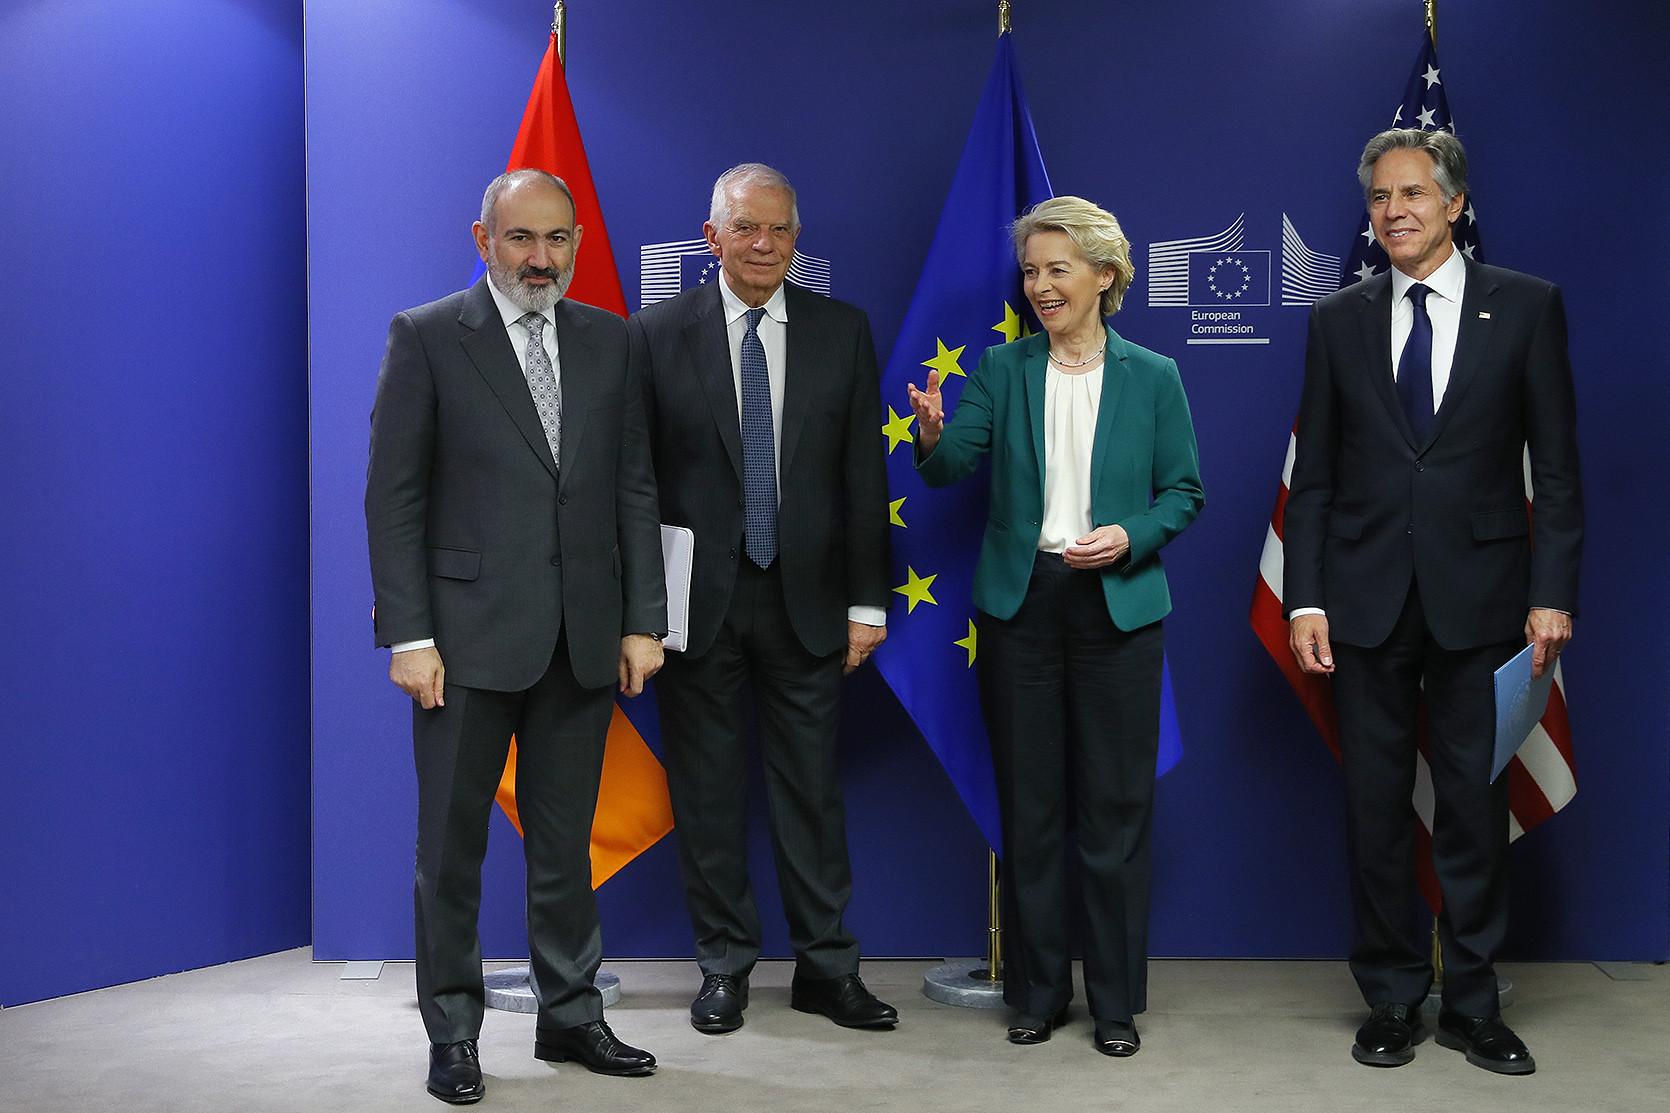 Пресс-релиз о совместной встрече Армения-ЕС-США в Брюсселе в поддержку устойчивости Армении